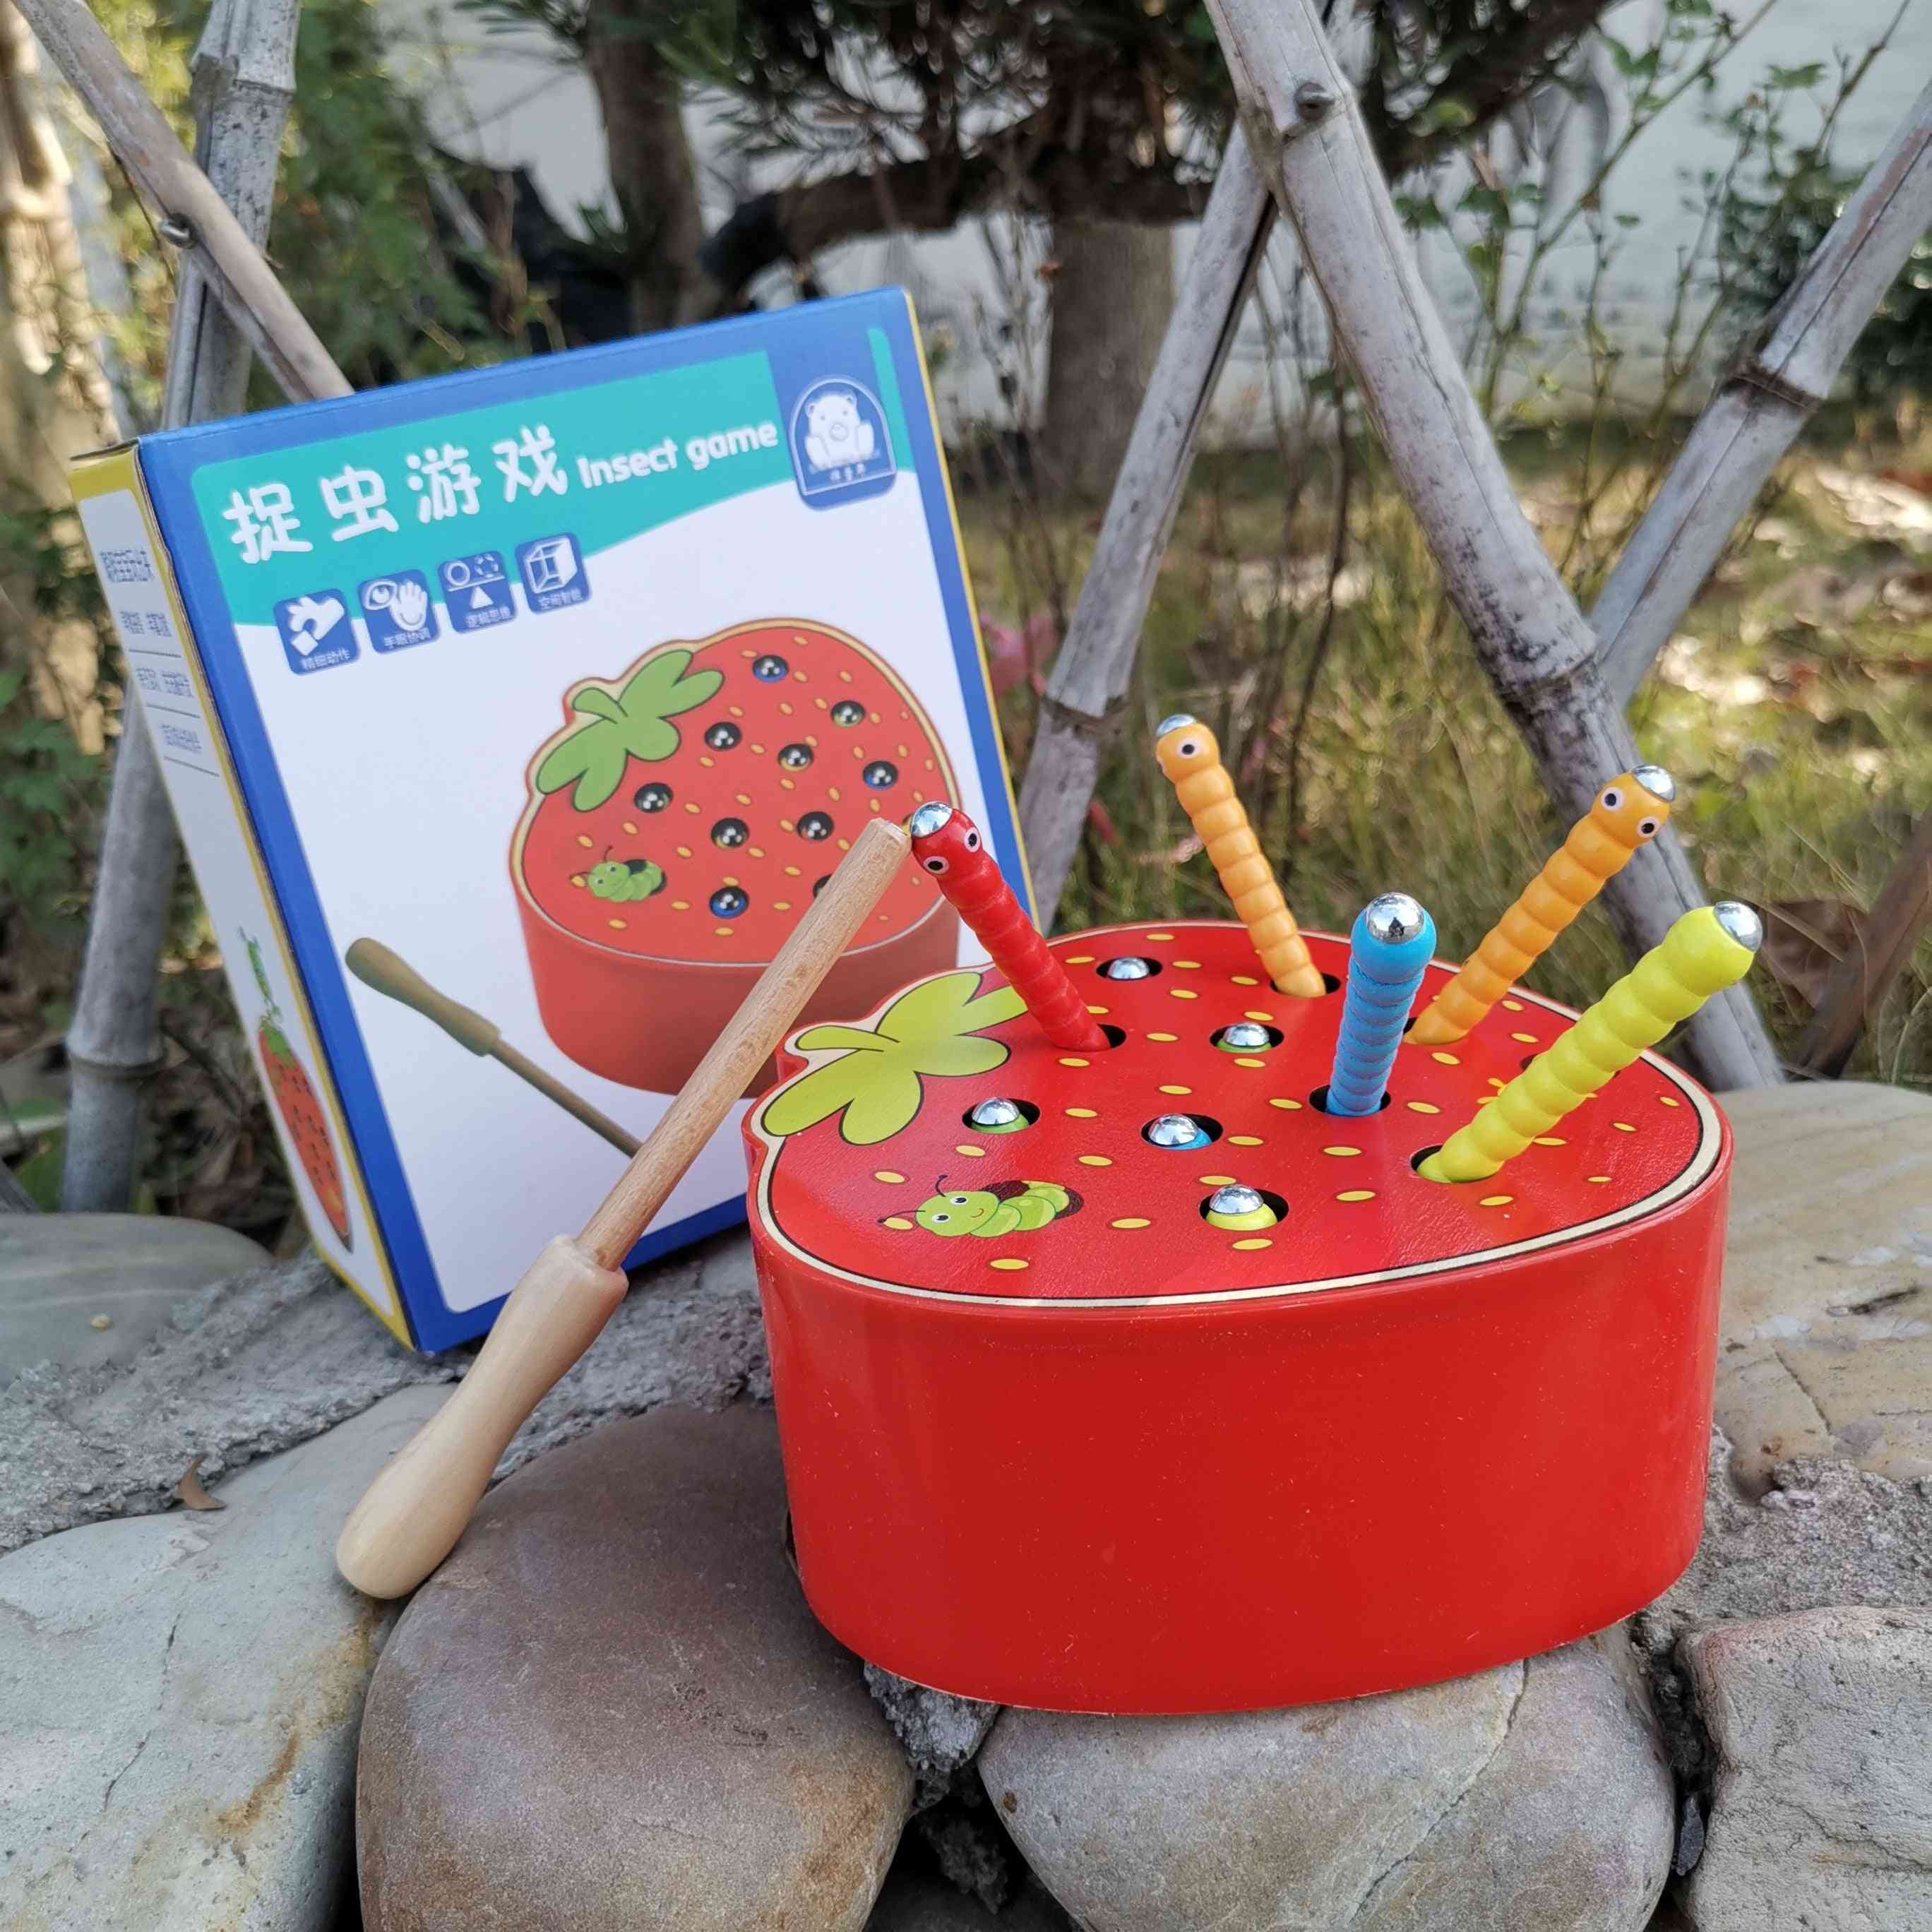 פאזל 3d צעצועים חינוכיים לגיל הרך - צבע תולעת צבע תפוח תות מגנטי קוגניטיבי - חאקי כהה